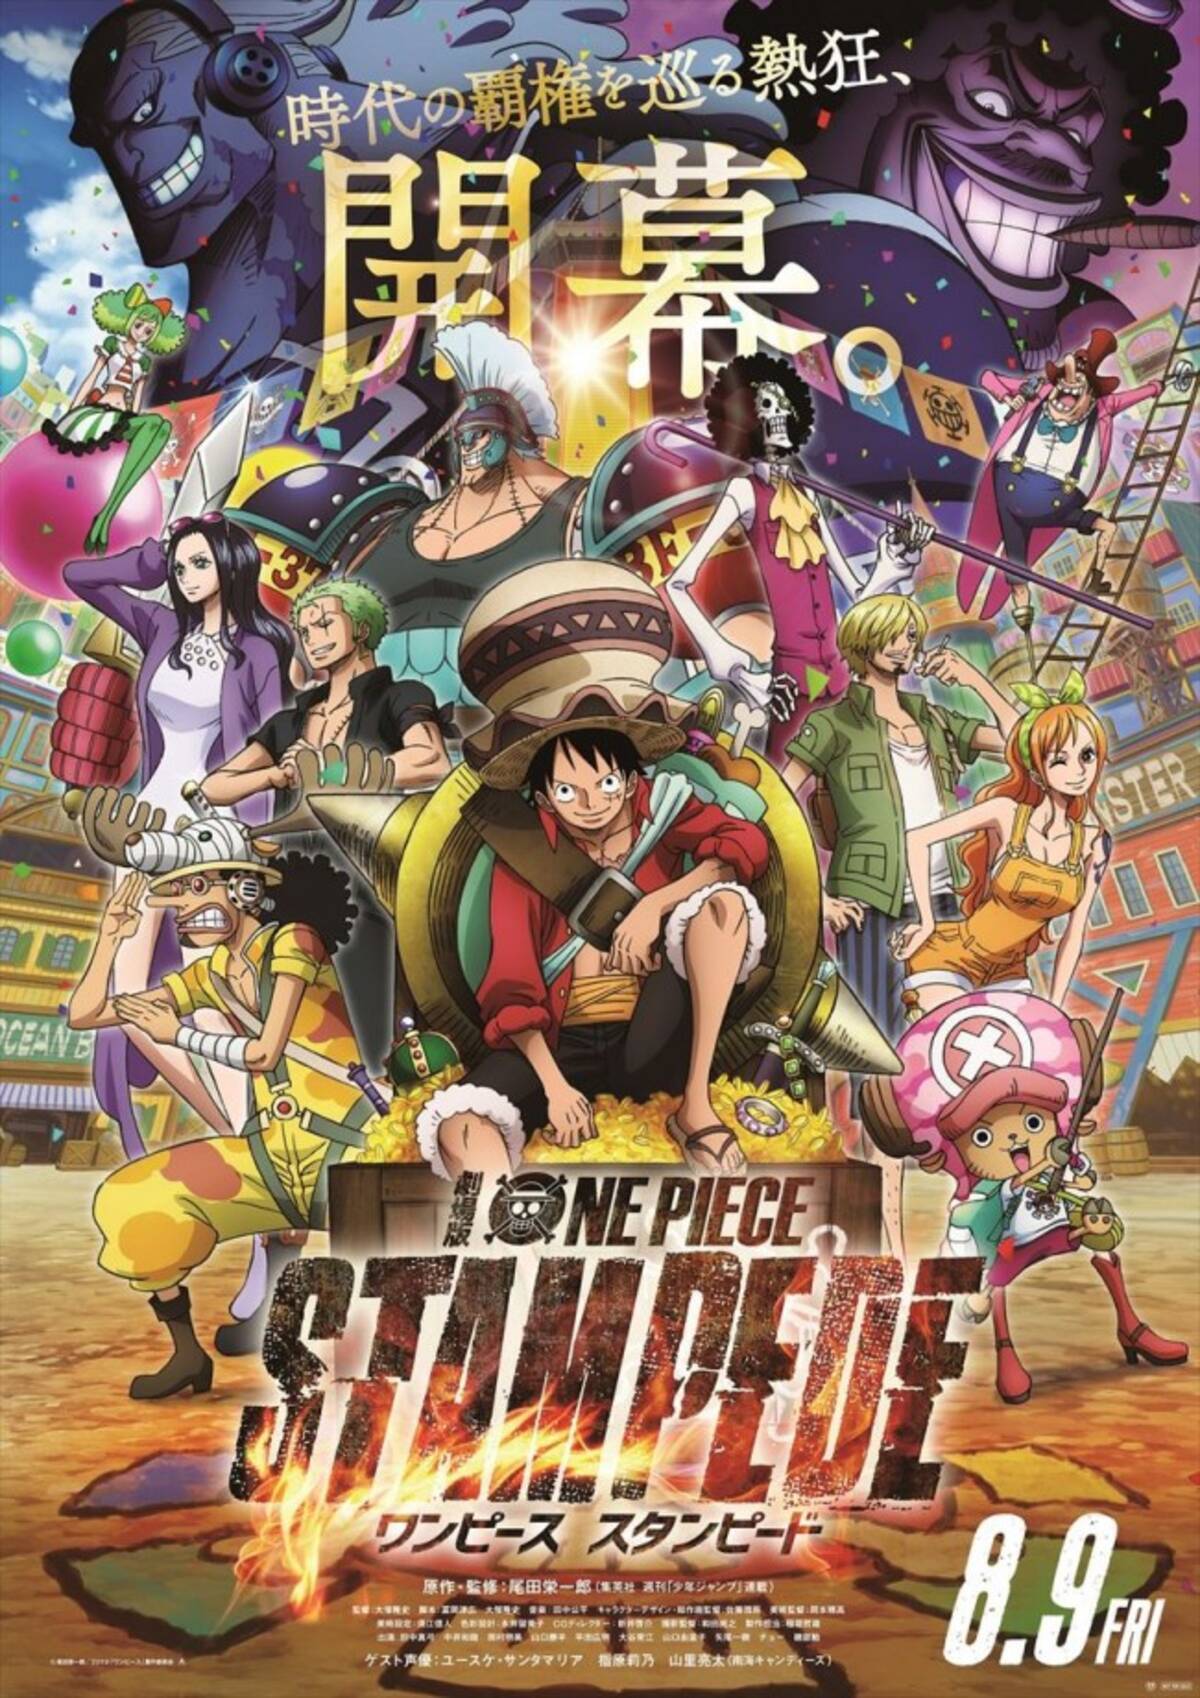 劇場版 One Piece Stampede キャラクター38人登場の特報 新ポスター完成 19年4月11日 エキサイトニュース 2 2